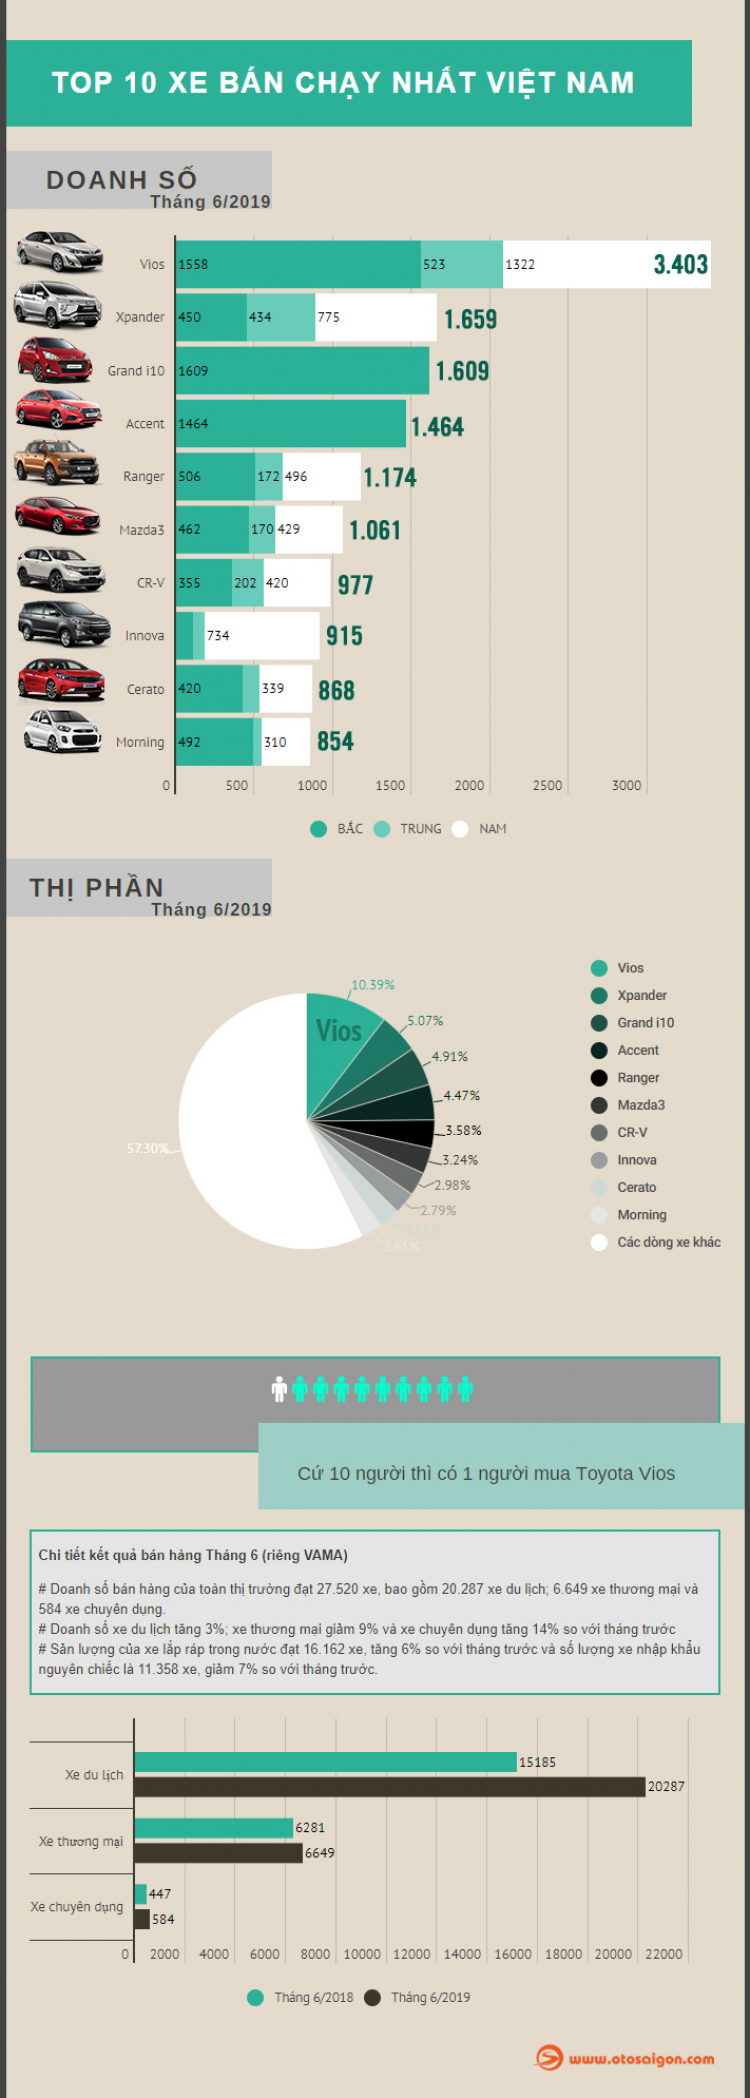 [Infographic] Top 10 xe bán chạy nhất tháng 6/2019